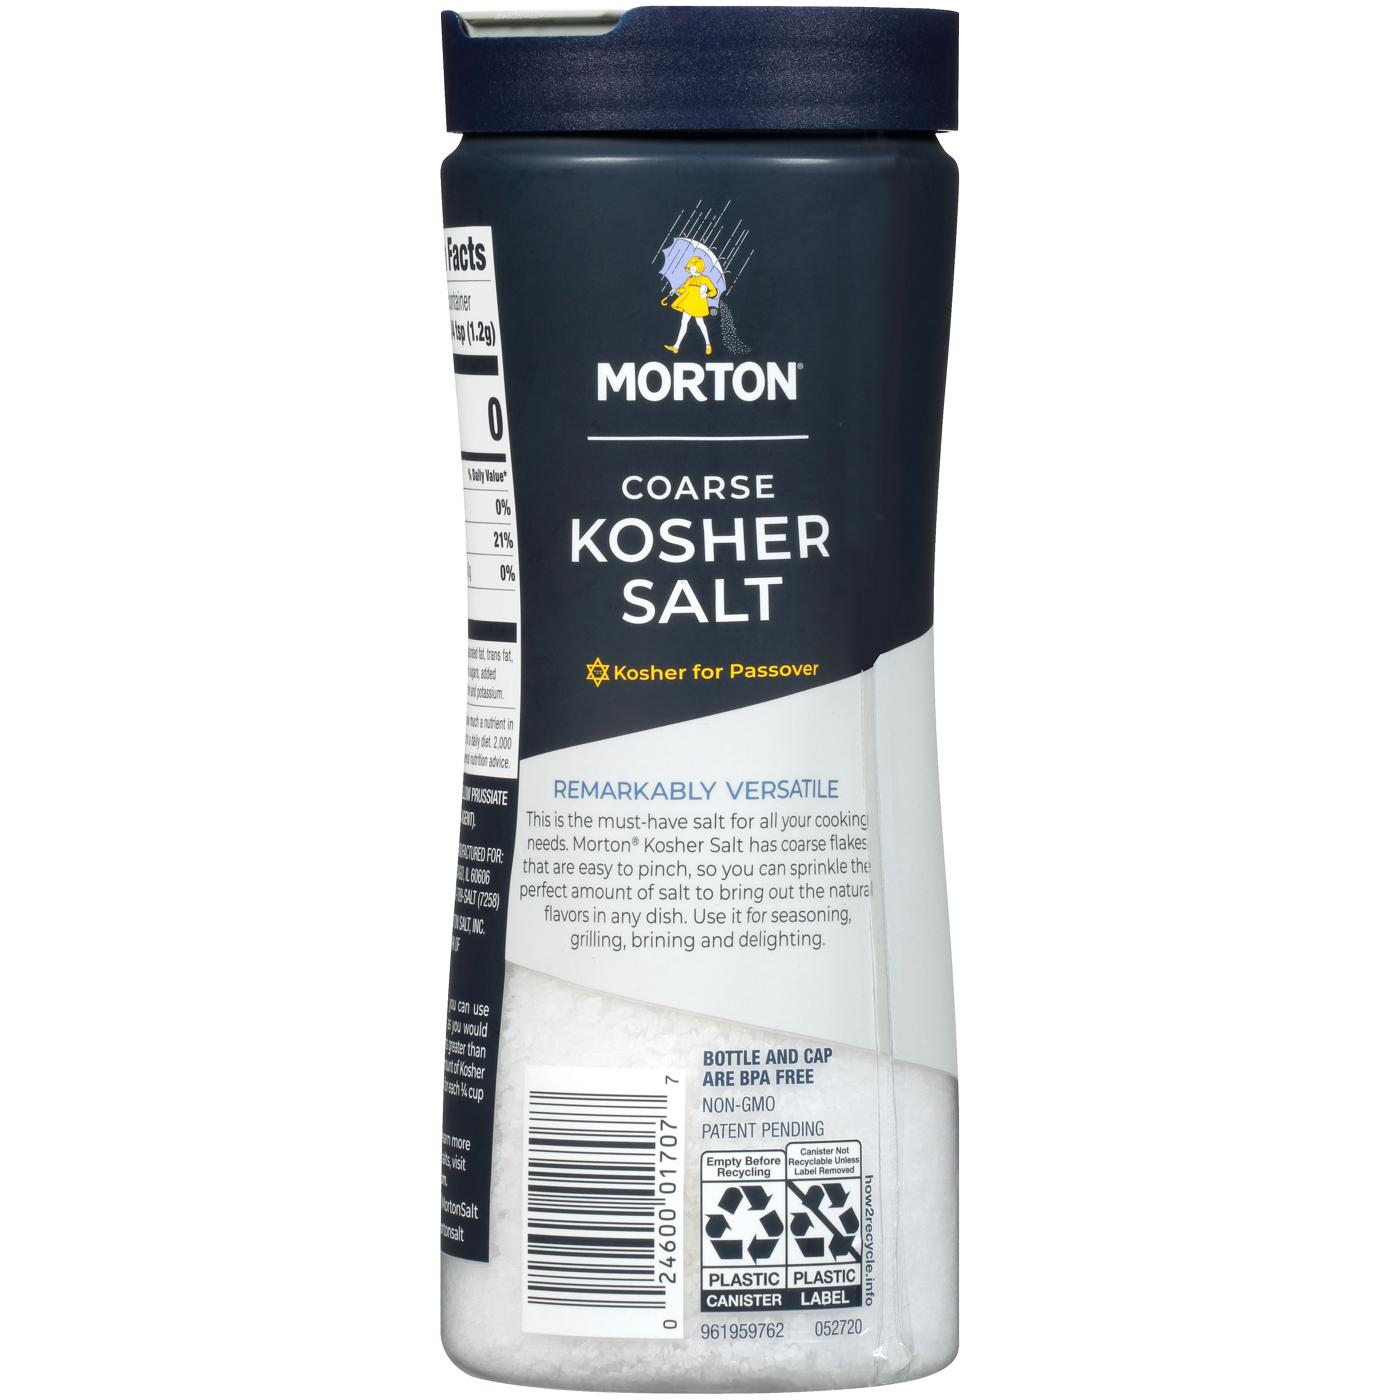 Morton Coarse Kosher Salt; image 4 of 4